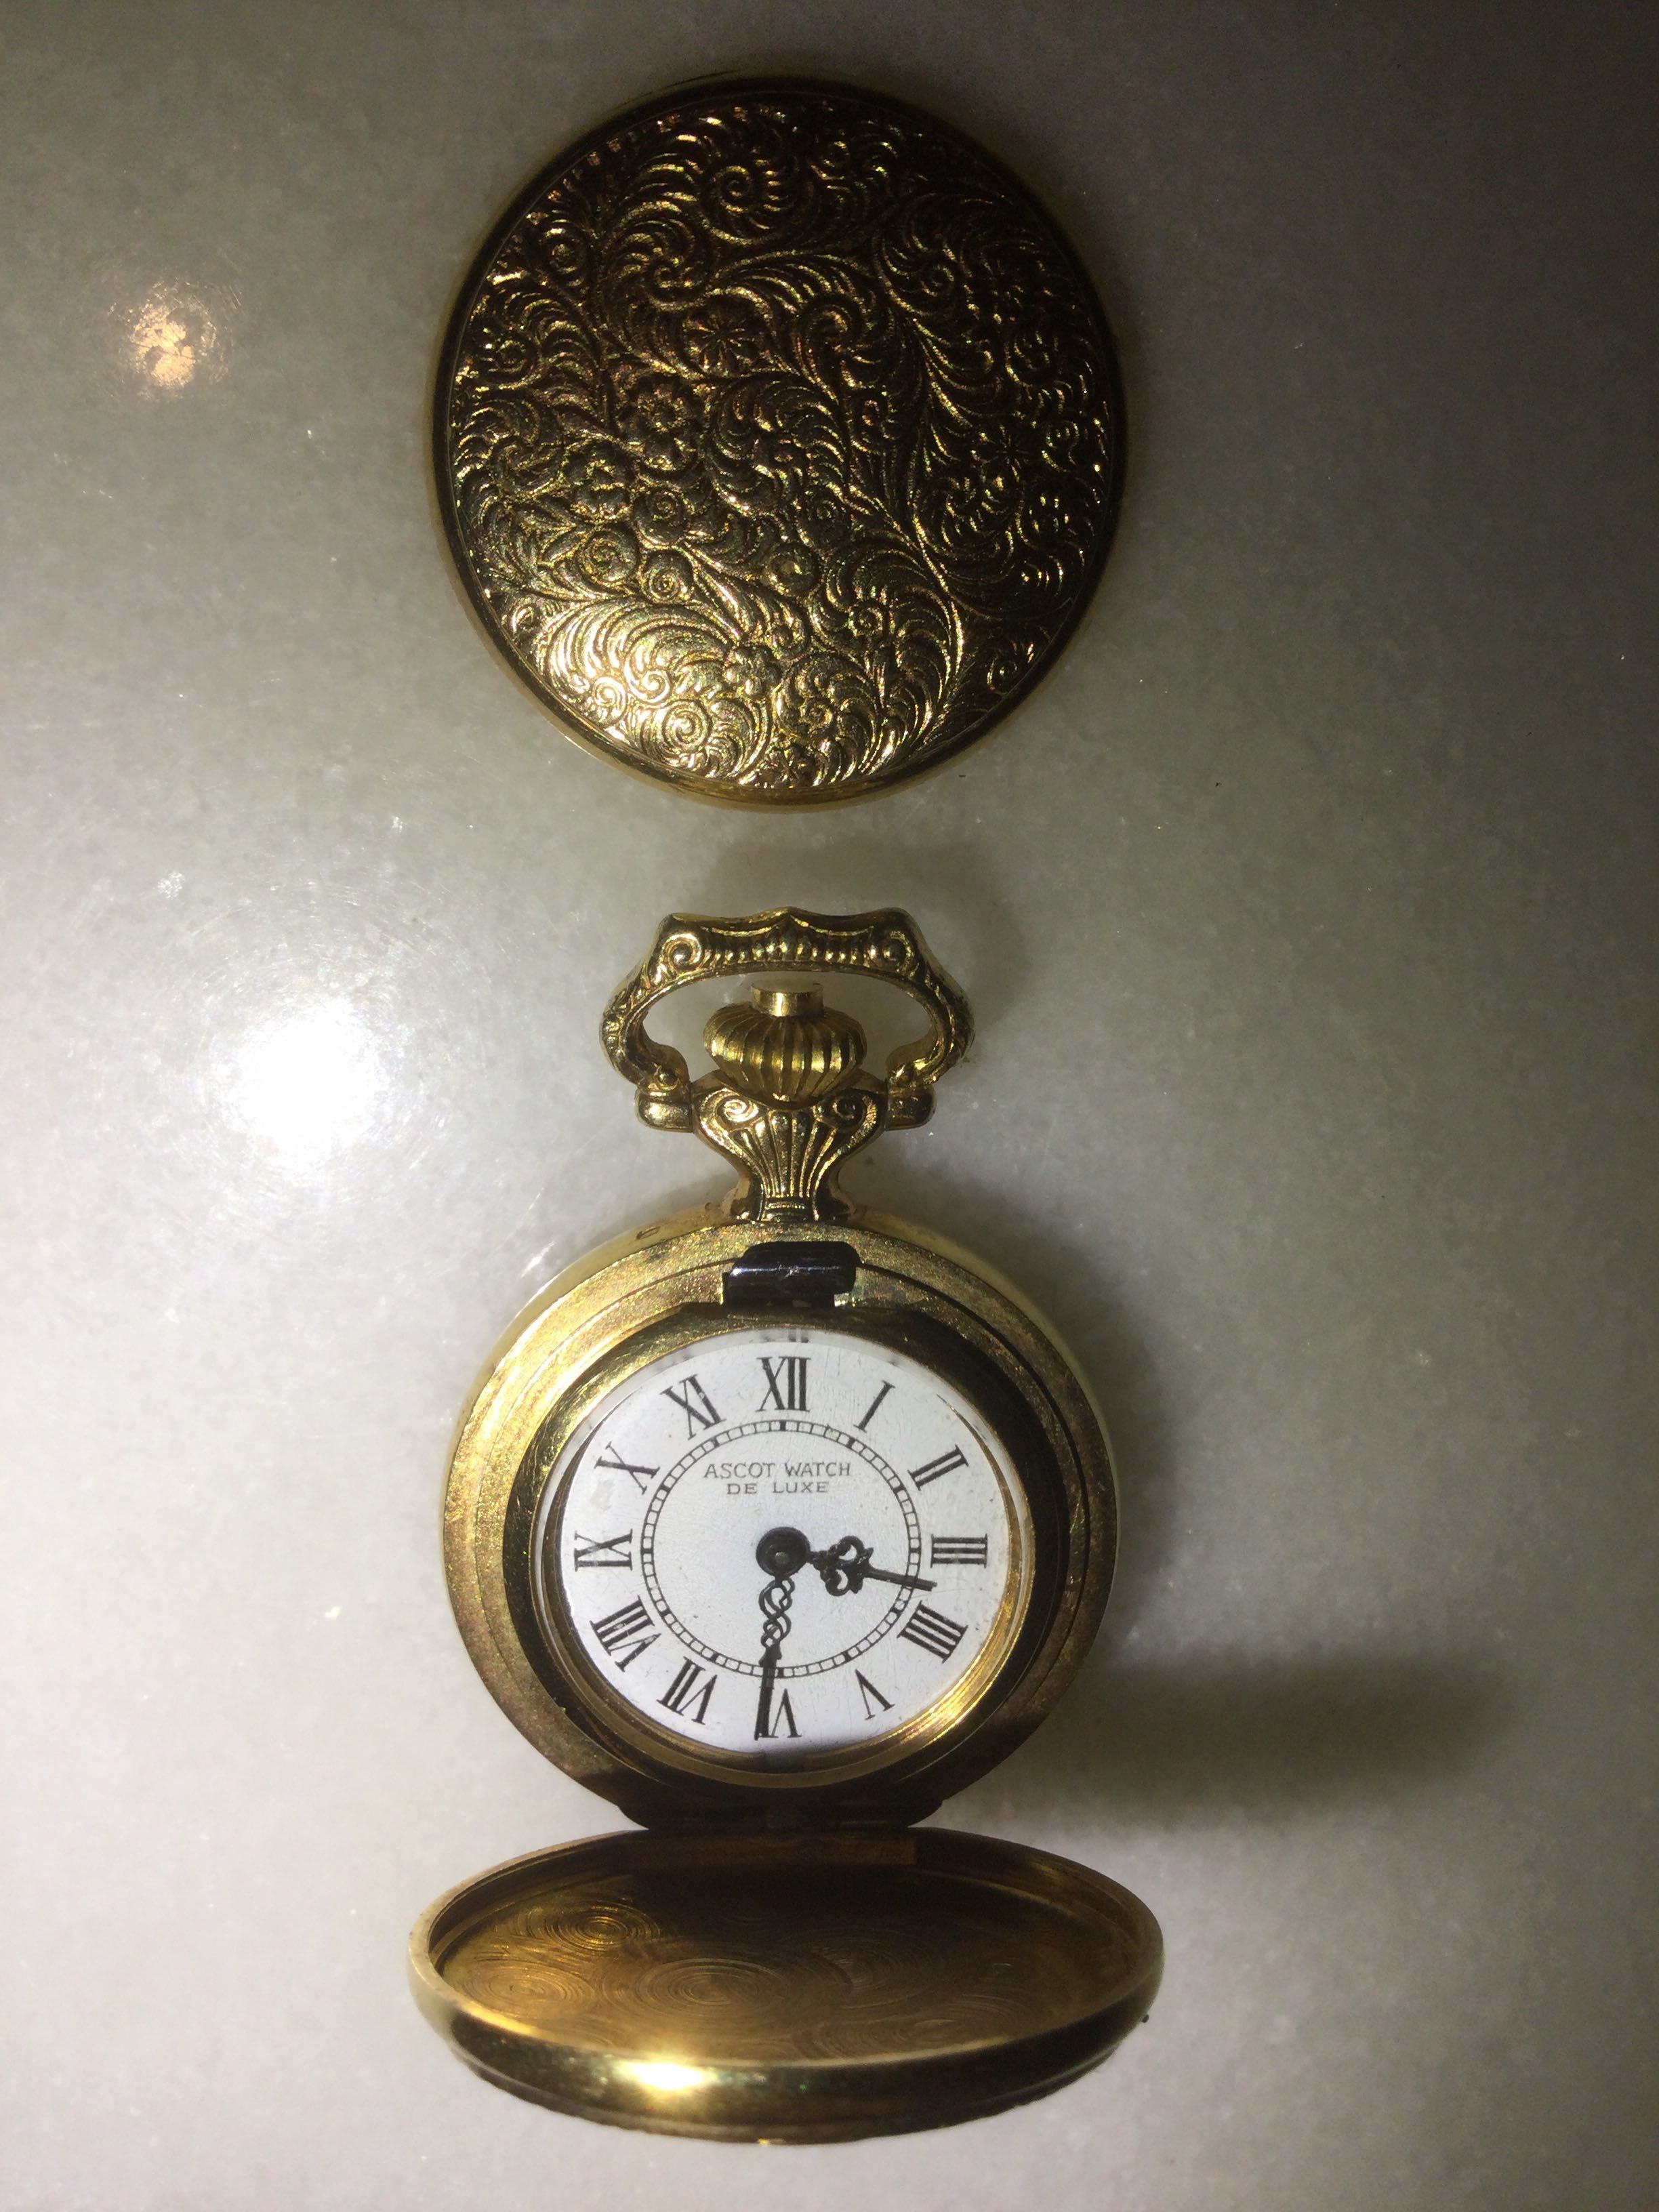 Relógio Ascot Watch Suíço Plaquet ouro Dois contrastes 2,7 cm funciona